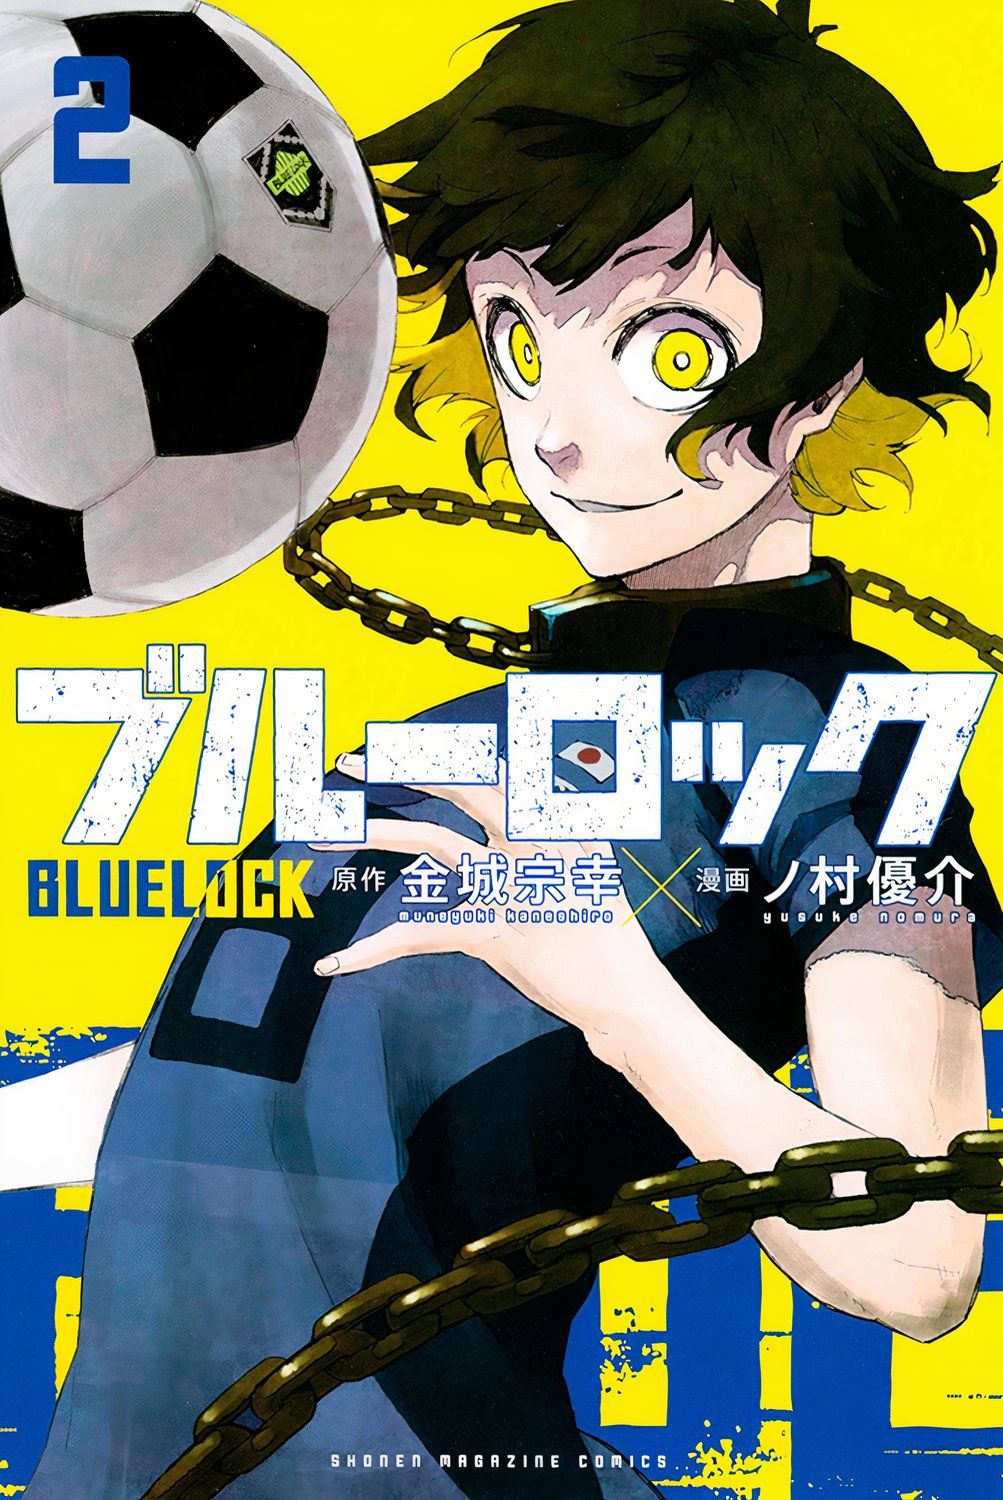 Bachira Meguru Blue Lock Volume 2 cover 